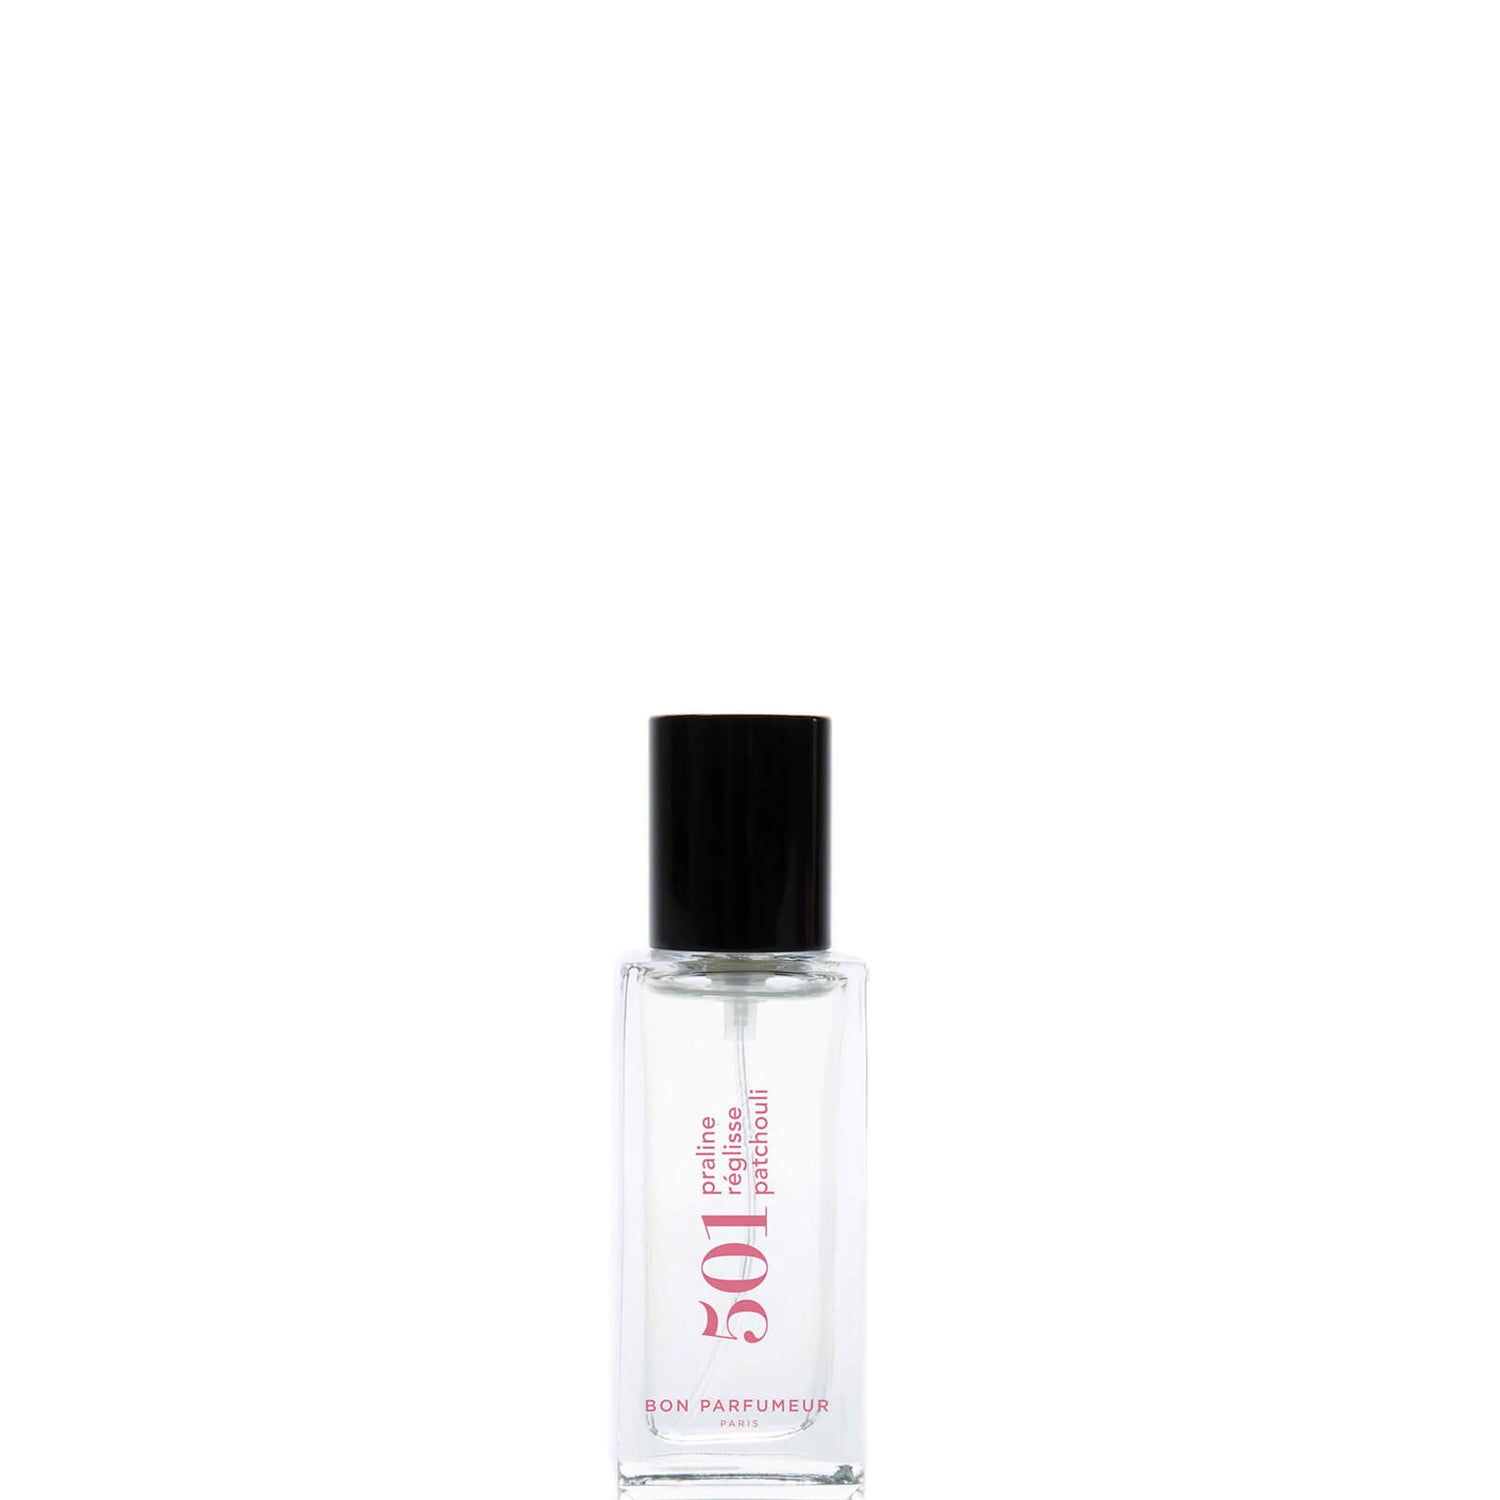 Bon Parfumeur 501 Praline Licorice Patchouli Eau de Parfum - 15ml